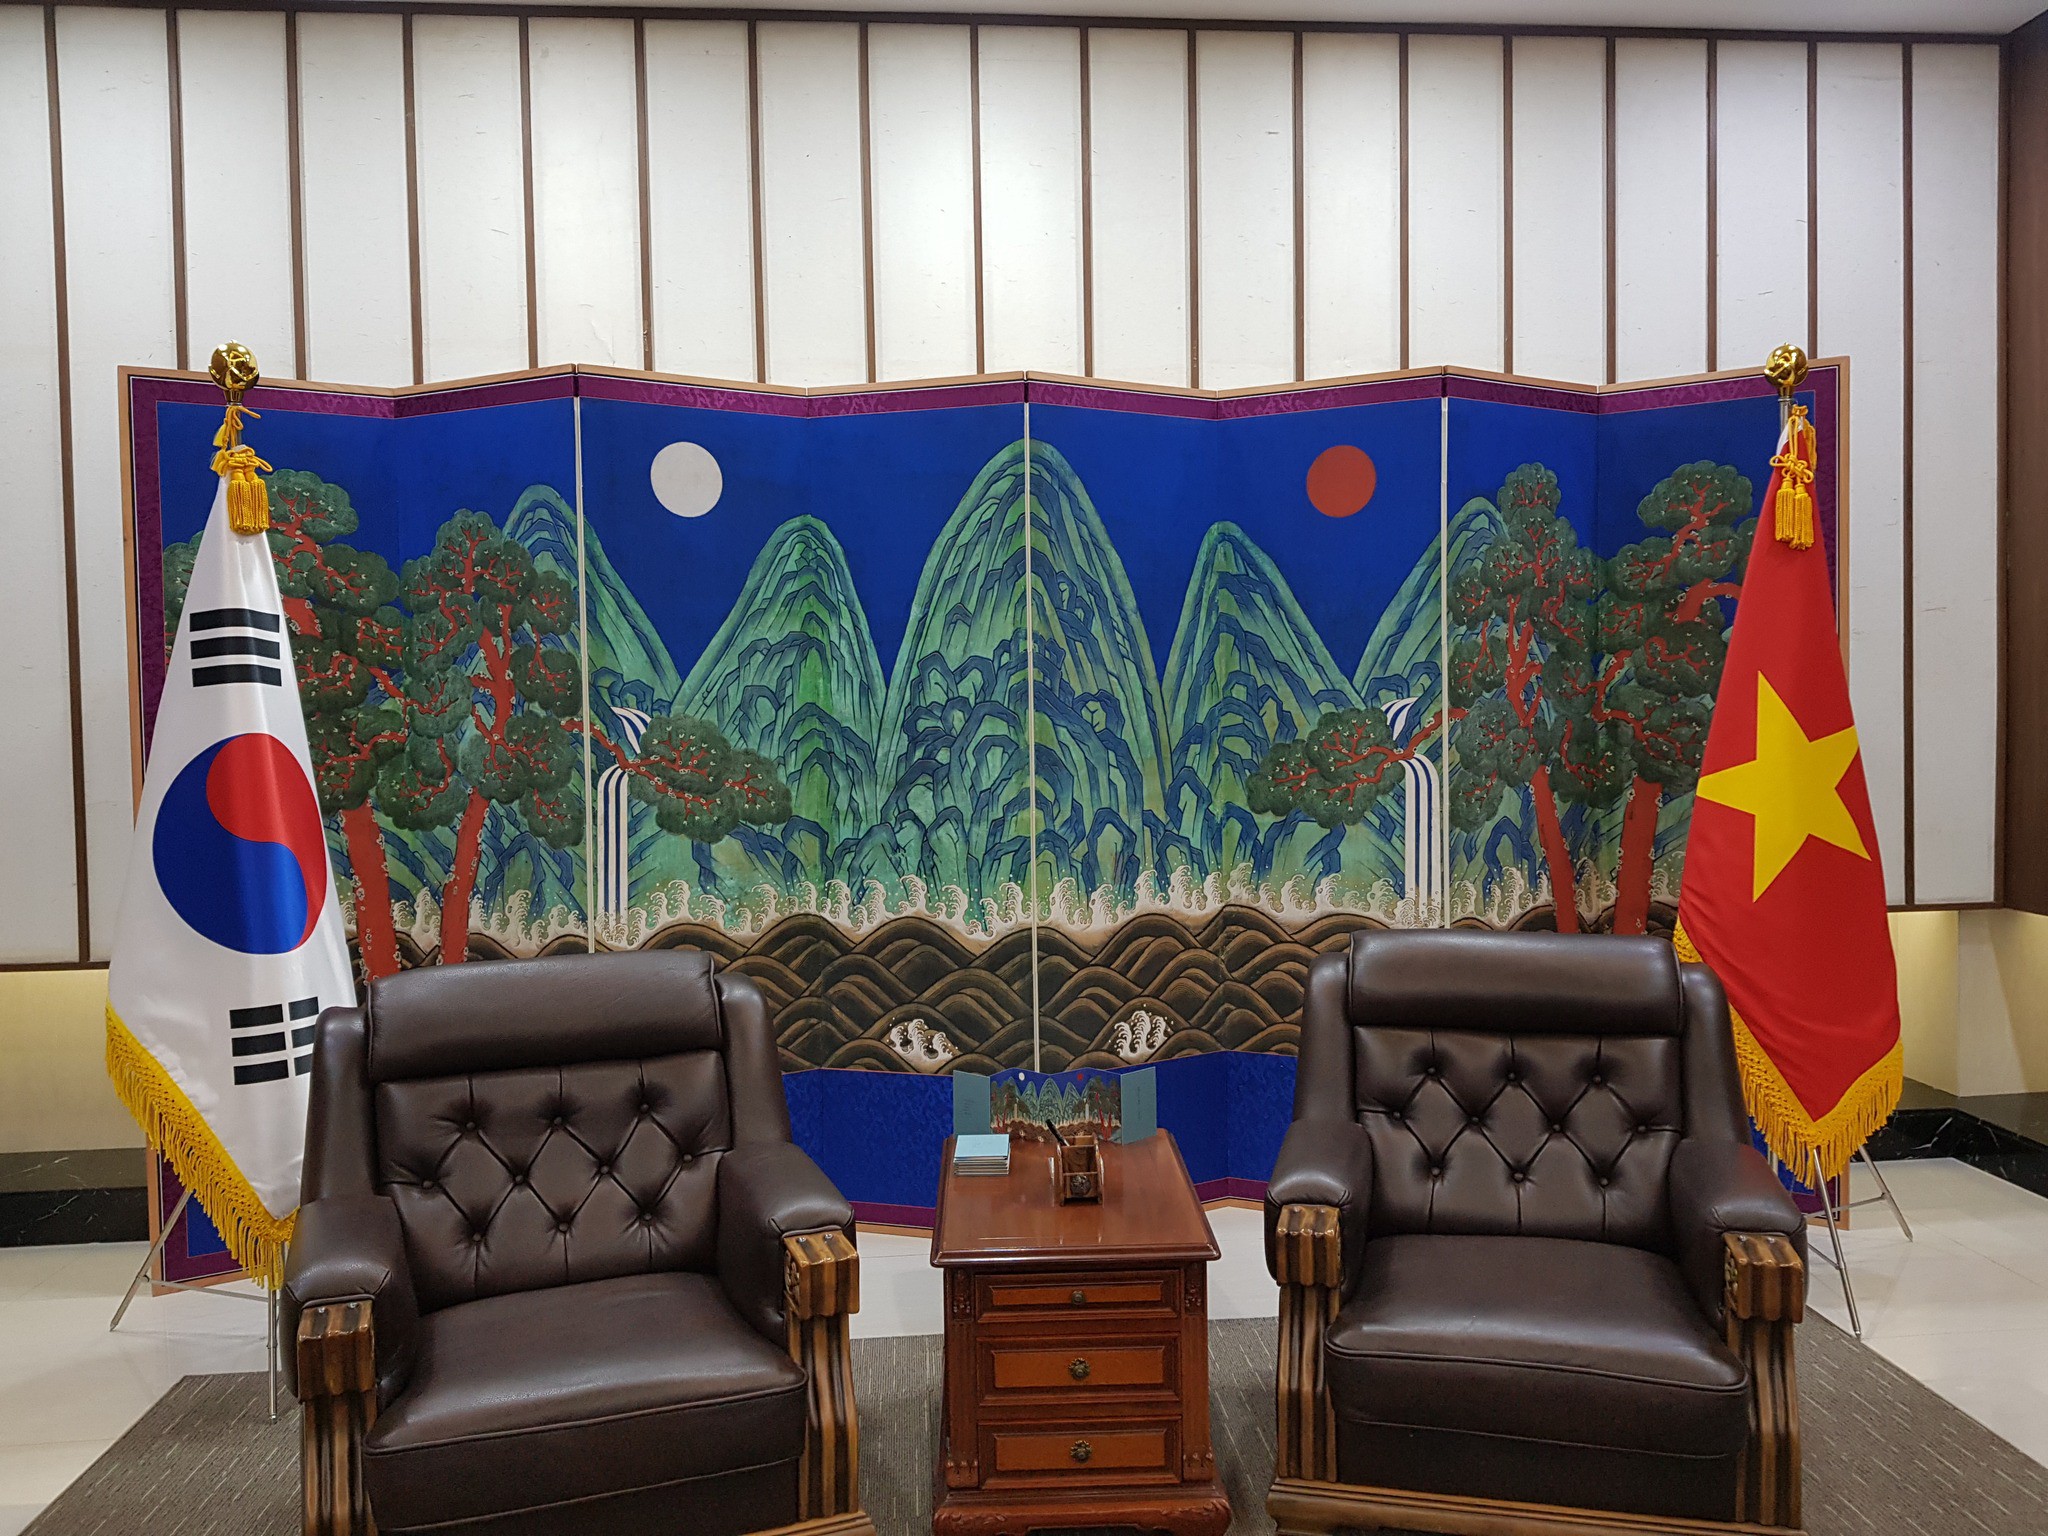 Tìm hiểu về bức tranh Nhật nguyệt ngũ phong đồ được đặt ở Đại sứ quán Hàn Quốc